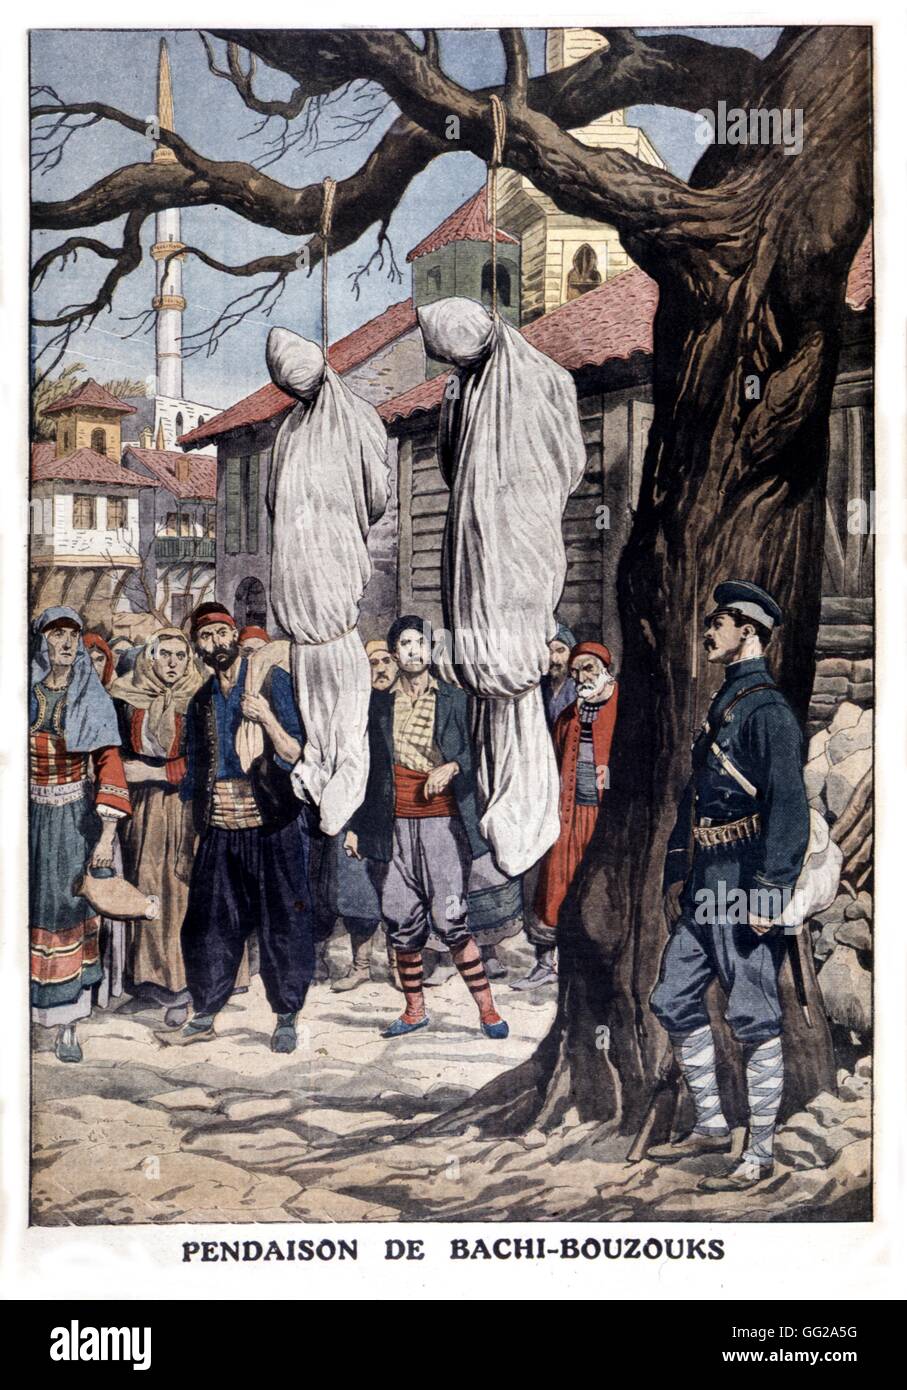 Bashibazouks pendus par des mercenaires de l'armée ottomane, dans 'Le Petit journal' newspaper 1912 Turquie Banque D'Images